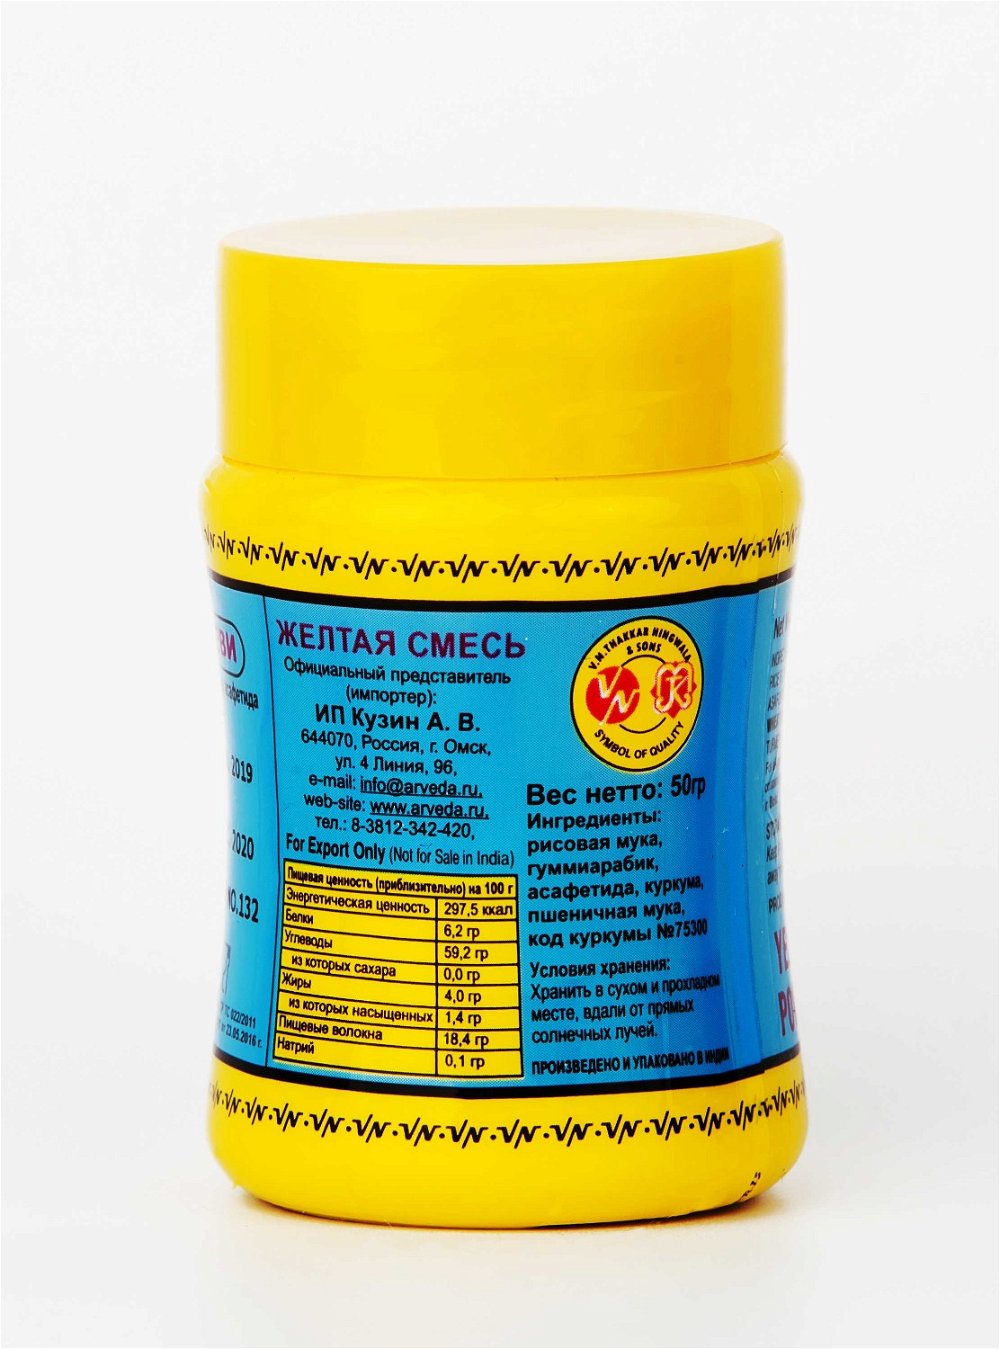 Асафетида компаундированная Vandevi Powder Yellow (50 г), желтая, 50 г